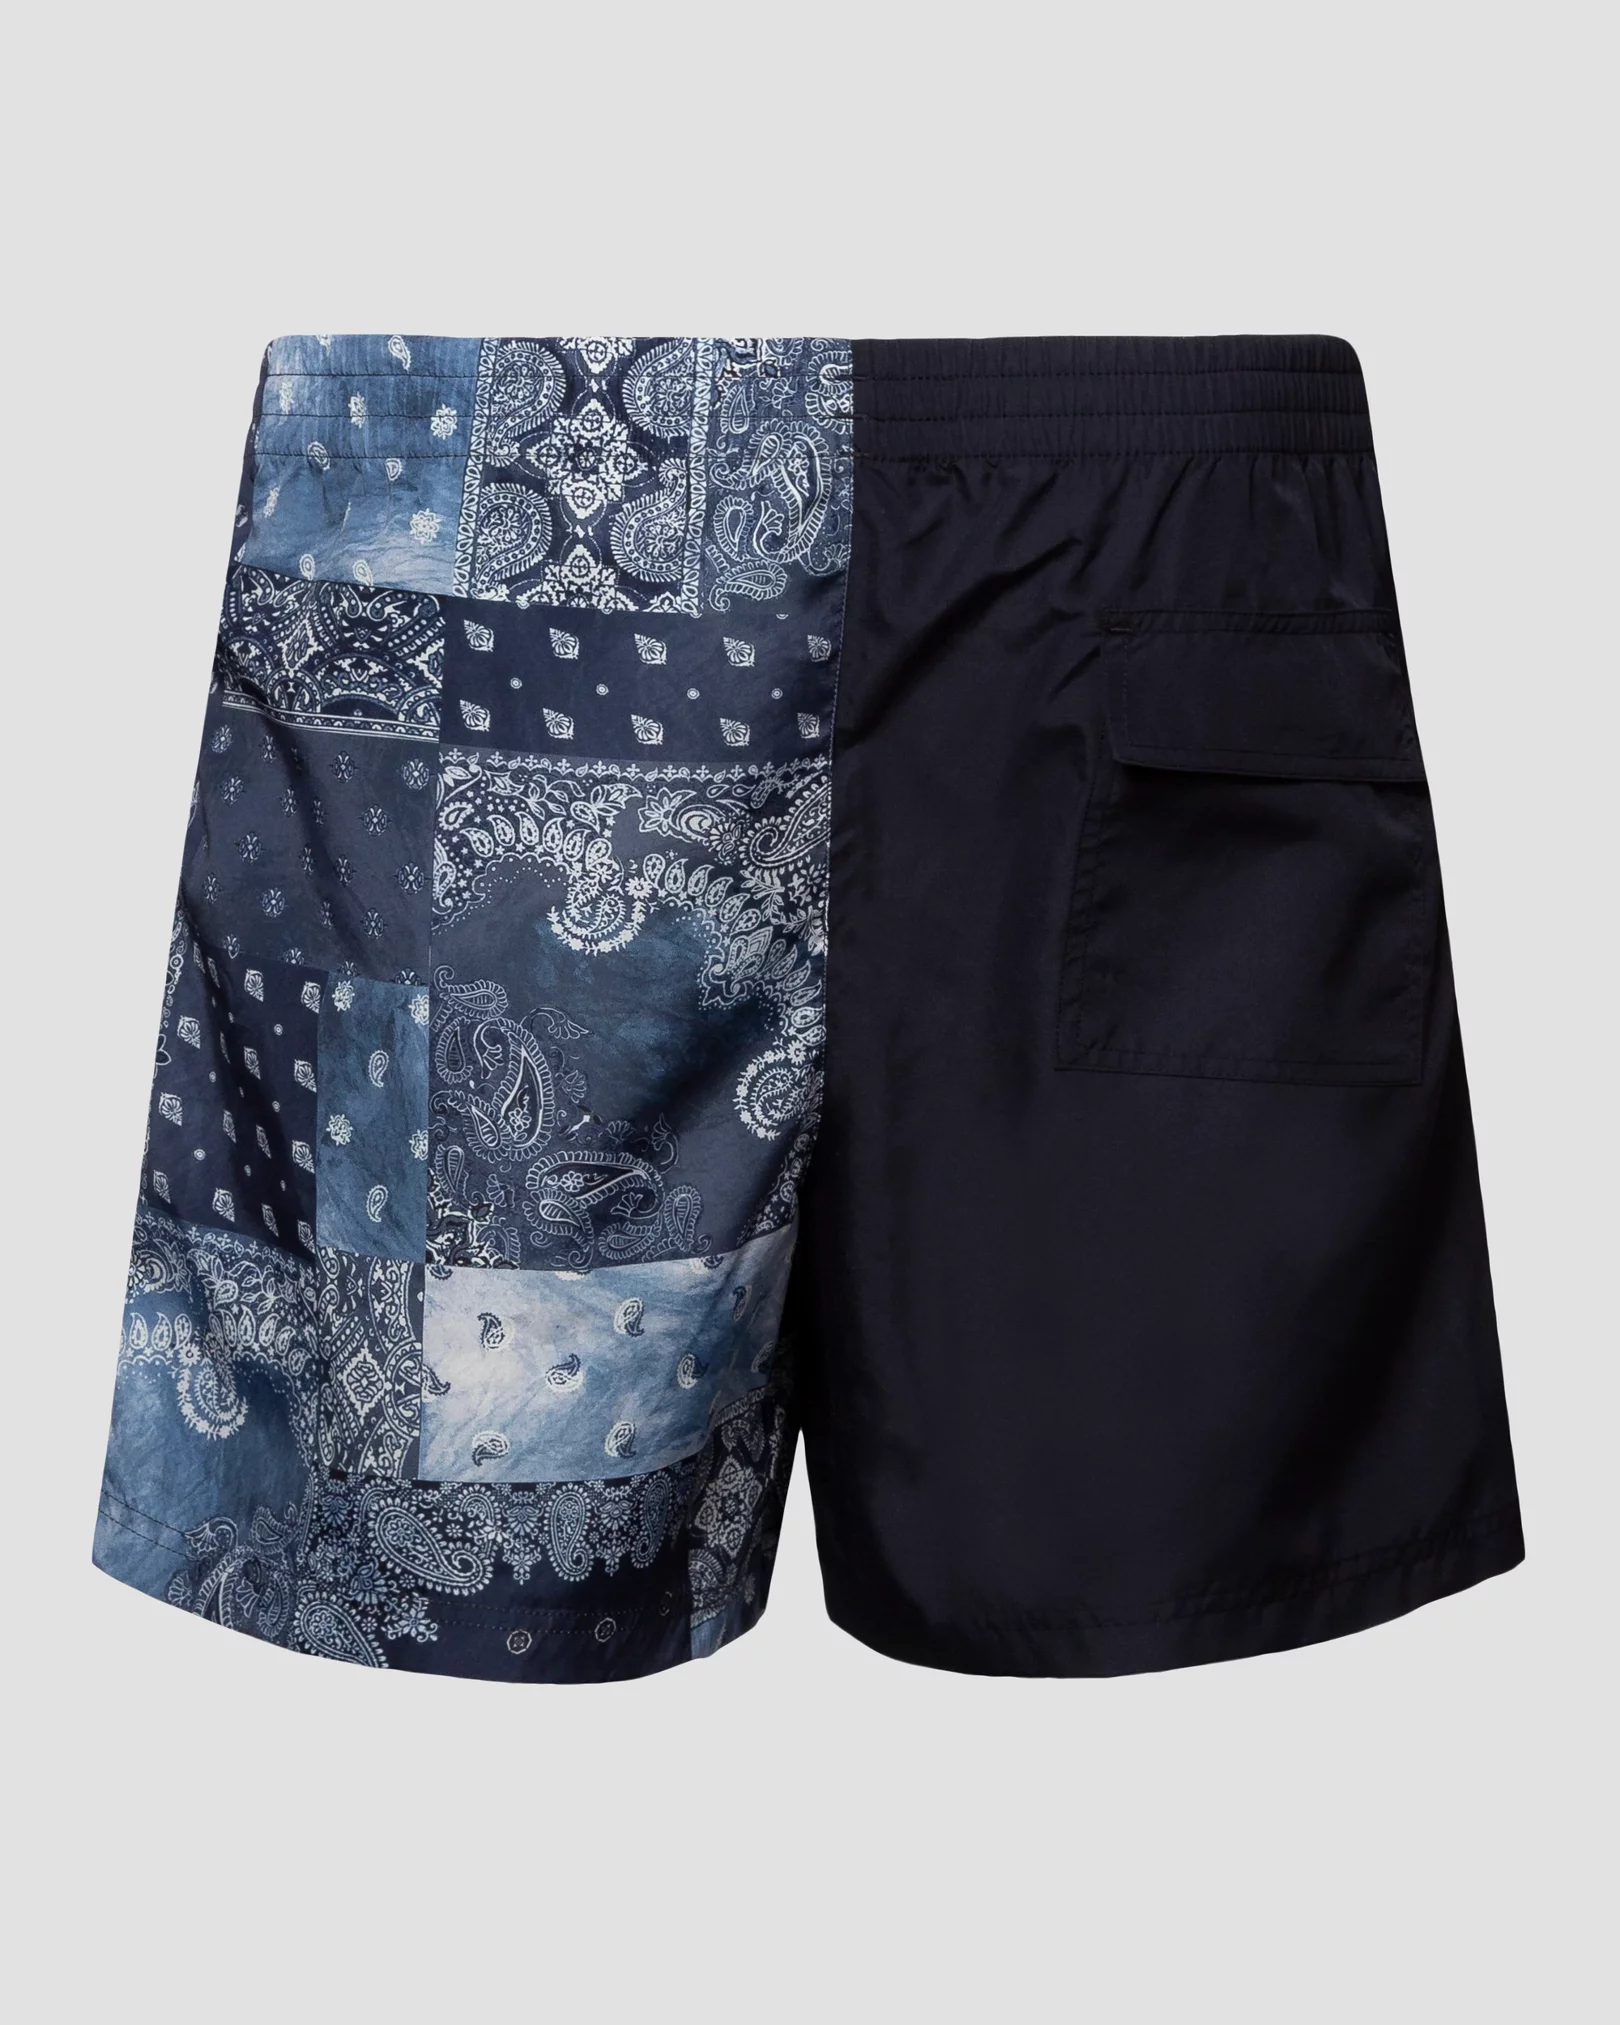 Eton - navy blue shorts